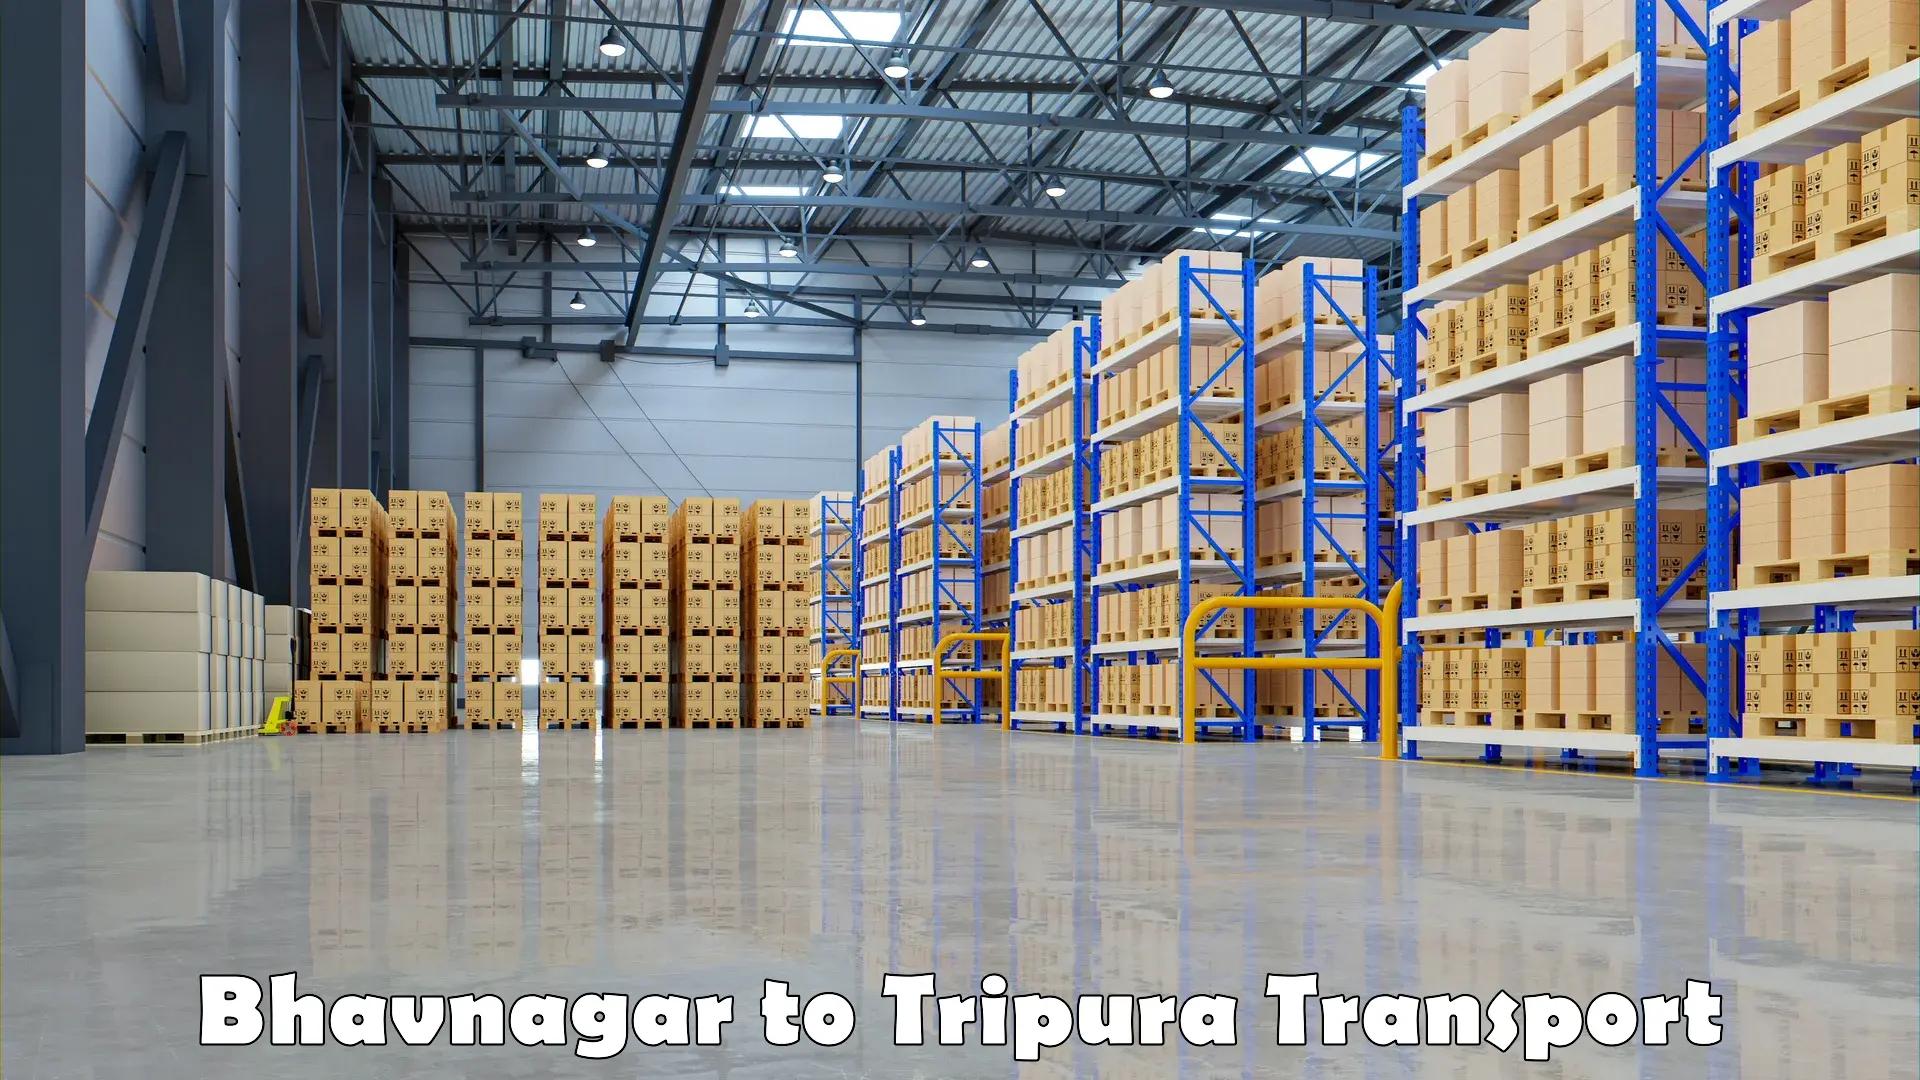 Delivery service Bhavnagar to Agartala